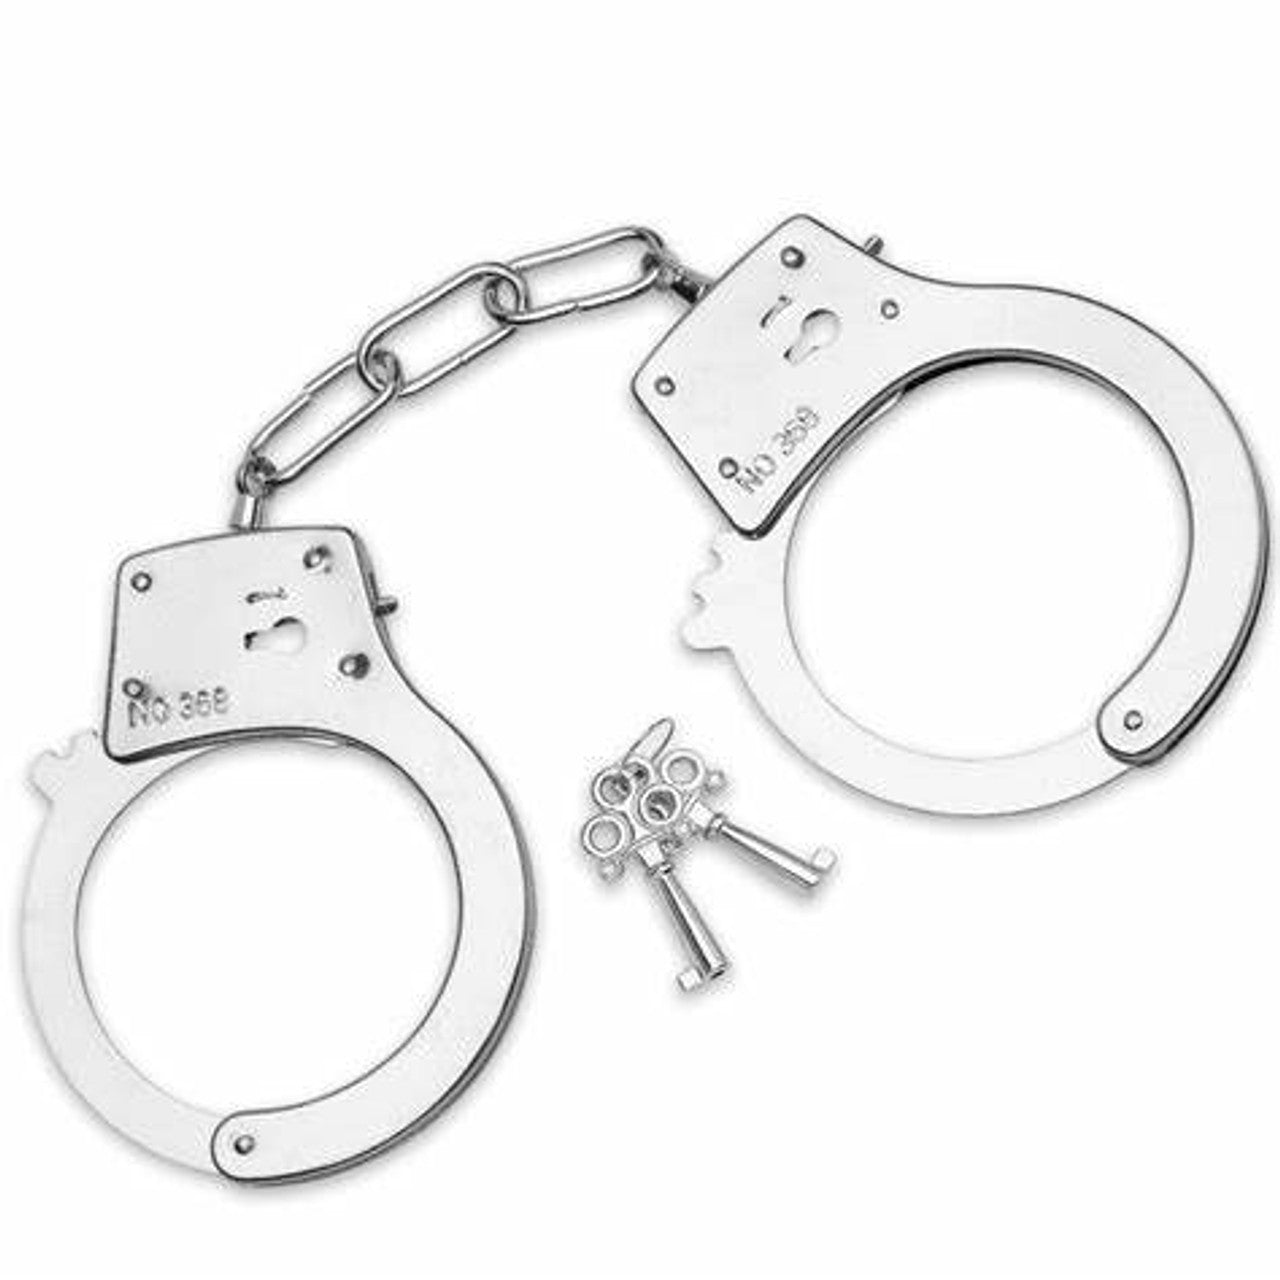 Toy Handcuffs (Singular Pair)